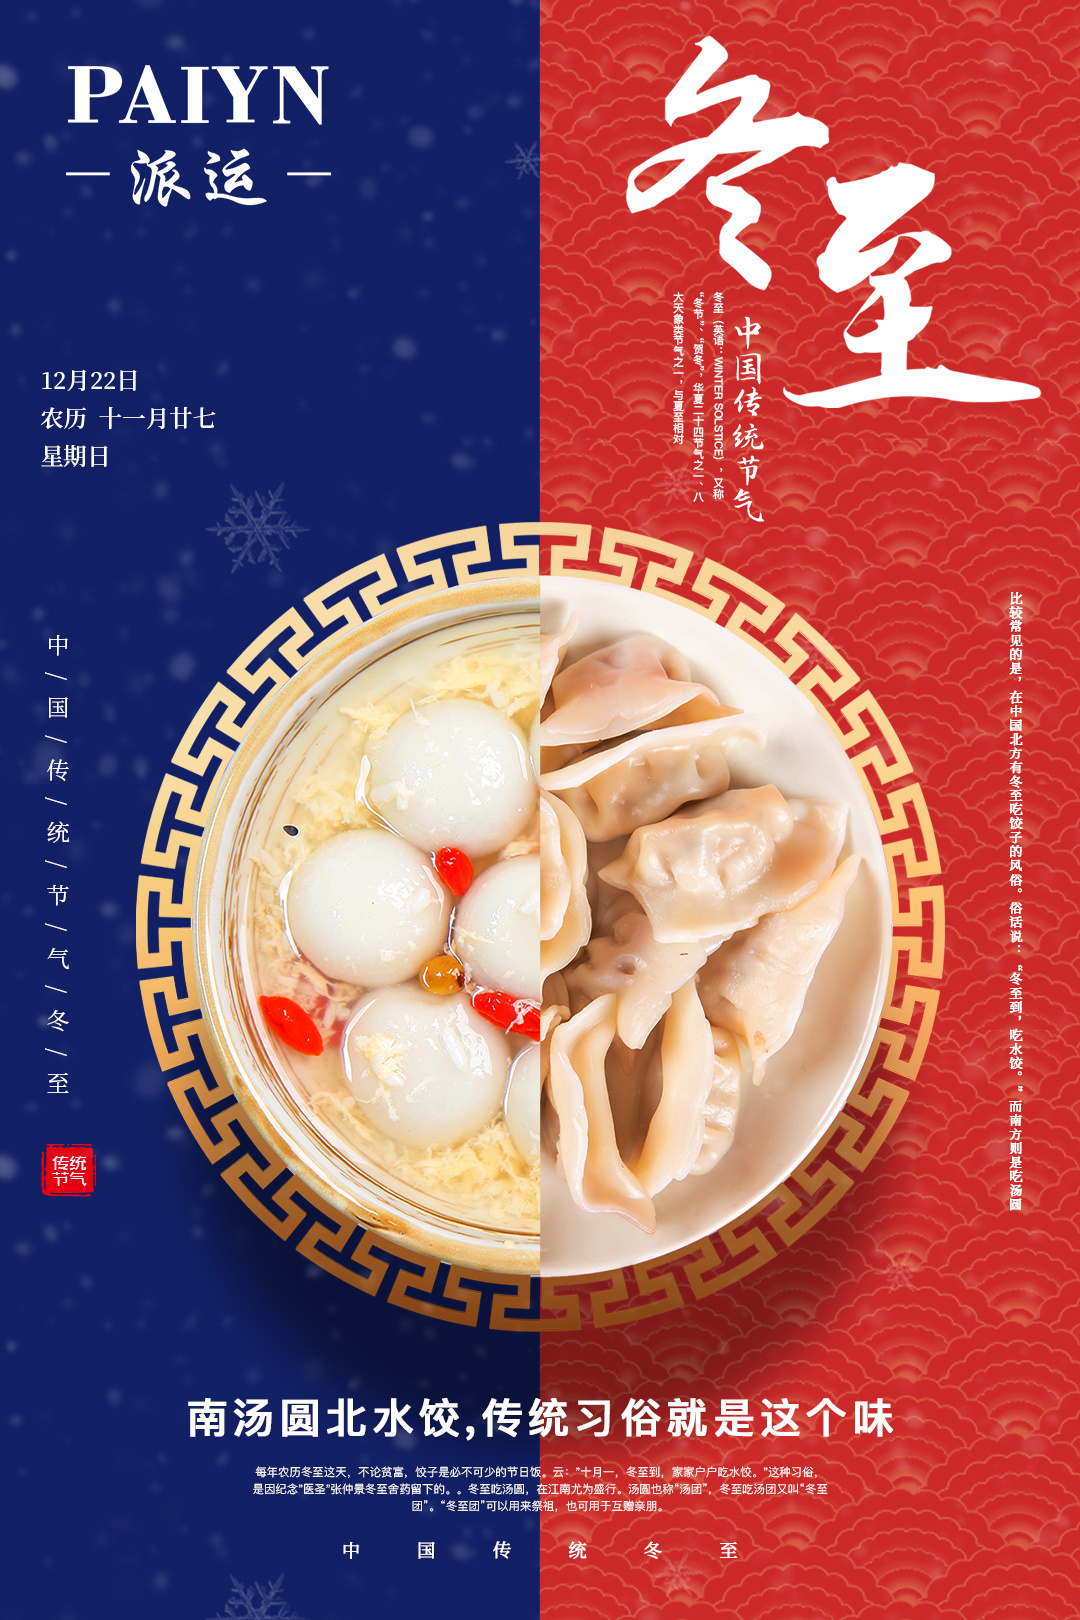 冬至吃饺子的由来_冬至吃饺子的由来作文_冬至吃饺子的由来简介